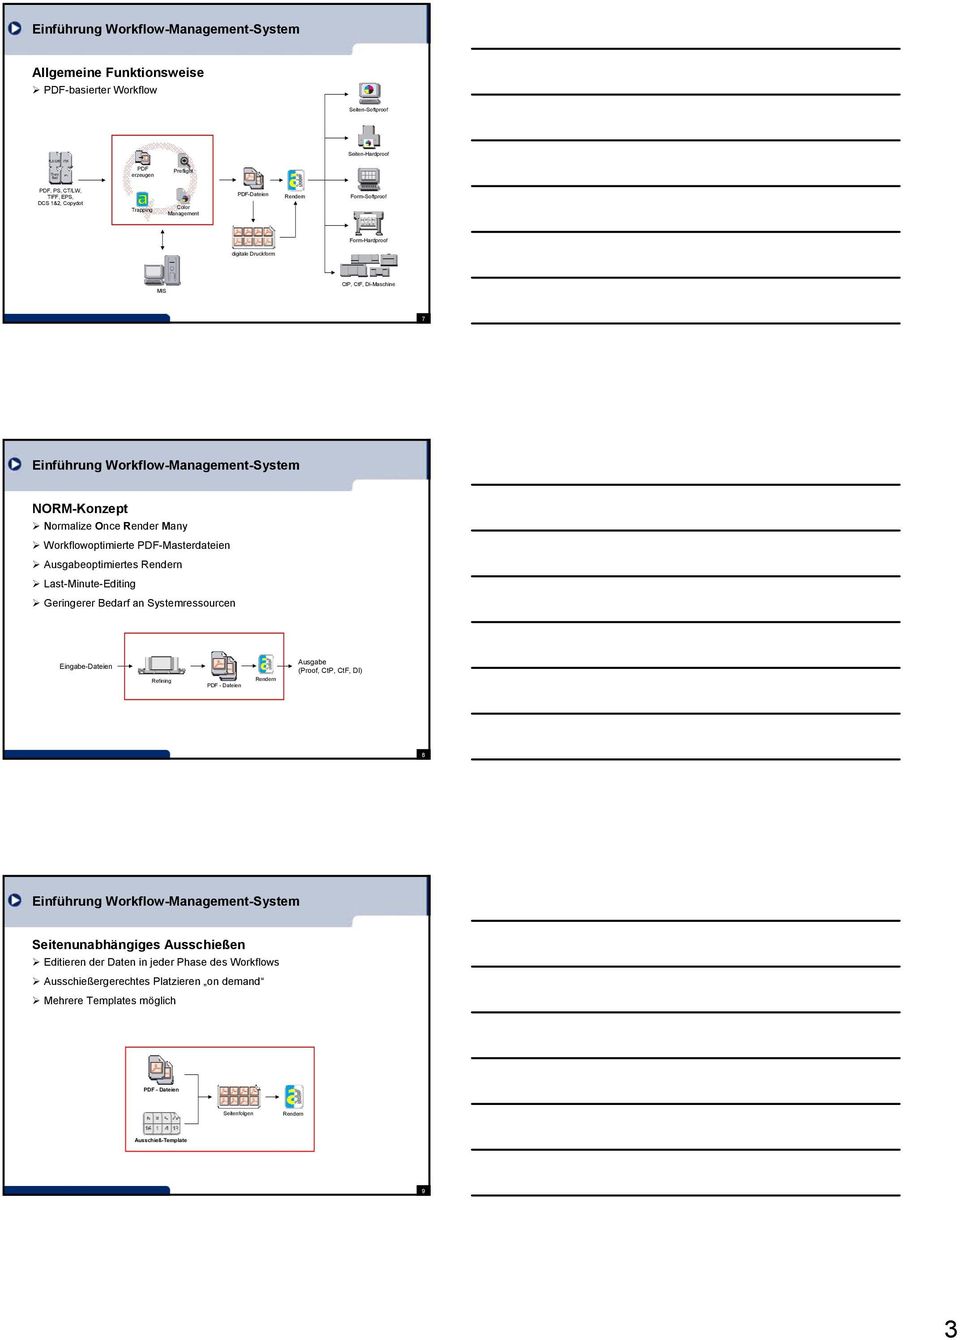 Workflowoptimierte PDF-Masterdateien Ausgabeoptimiertes Rendern Last-Minute-Editing Geringerer Bedarf an Systemressourcen Eingabe-Dateien Refining PDF - Dateien Rendern Ausgabe (Proof, CtP, CtF, DI)